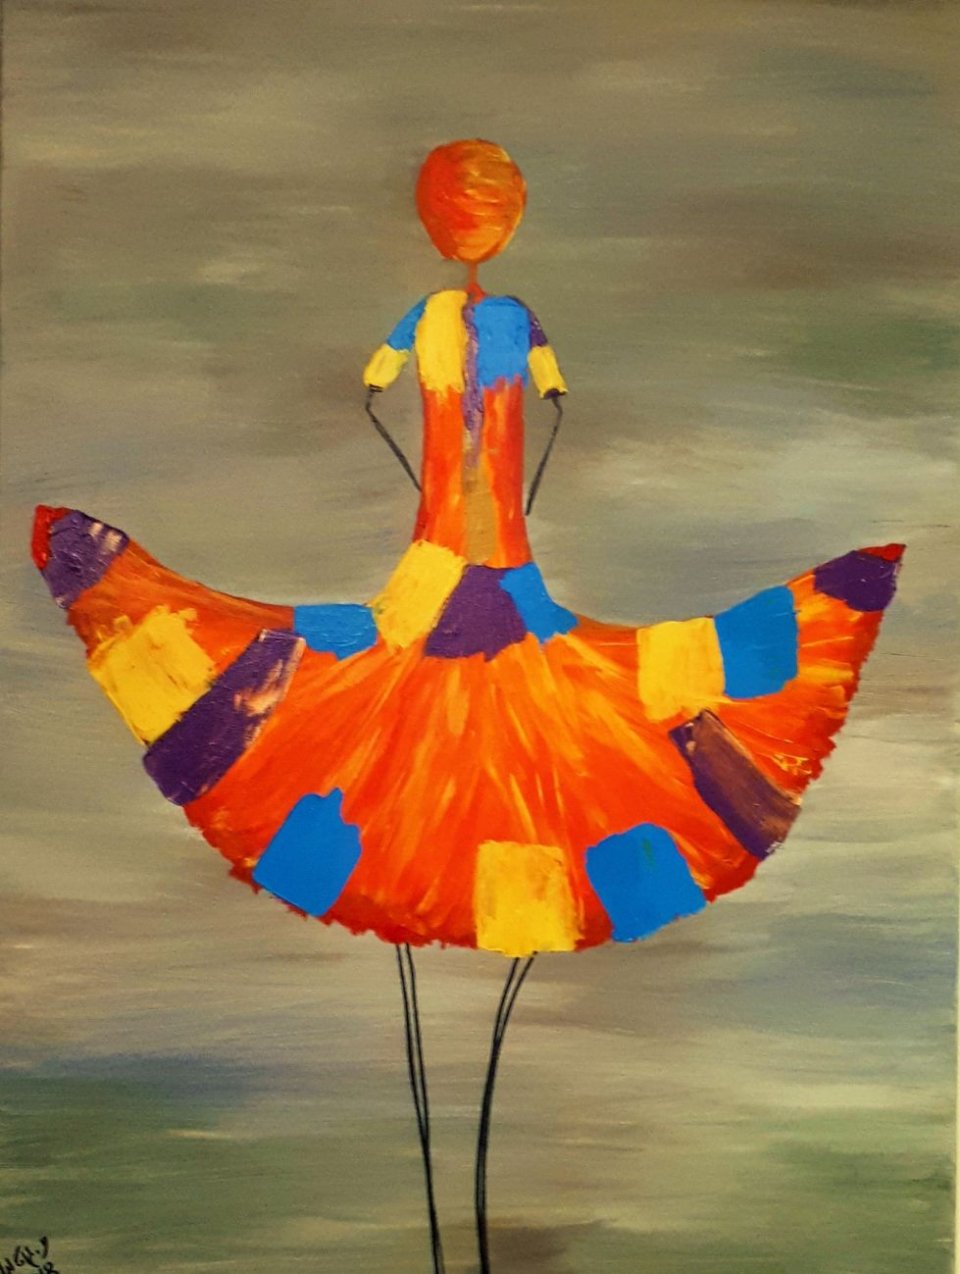 רקדנית בשמלה צבעונית